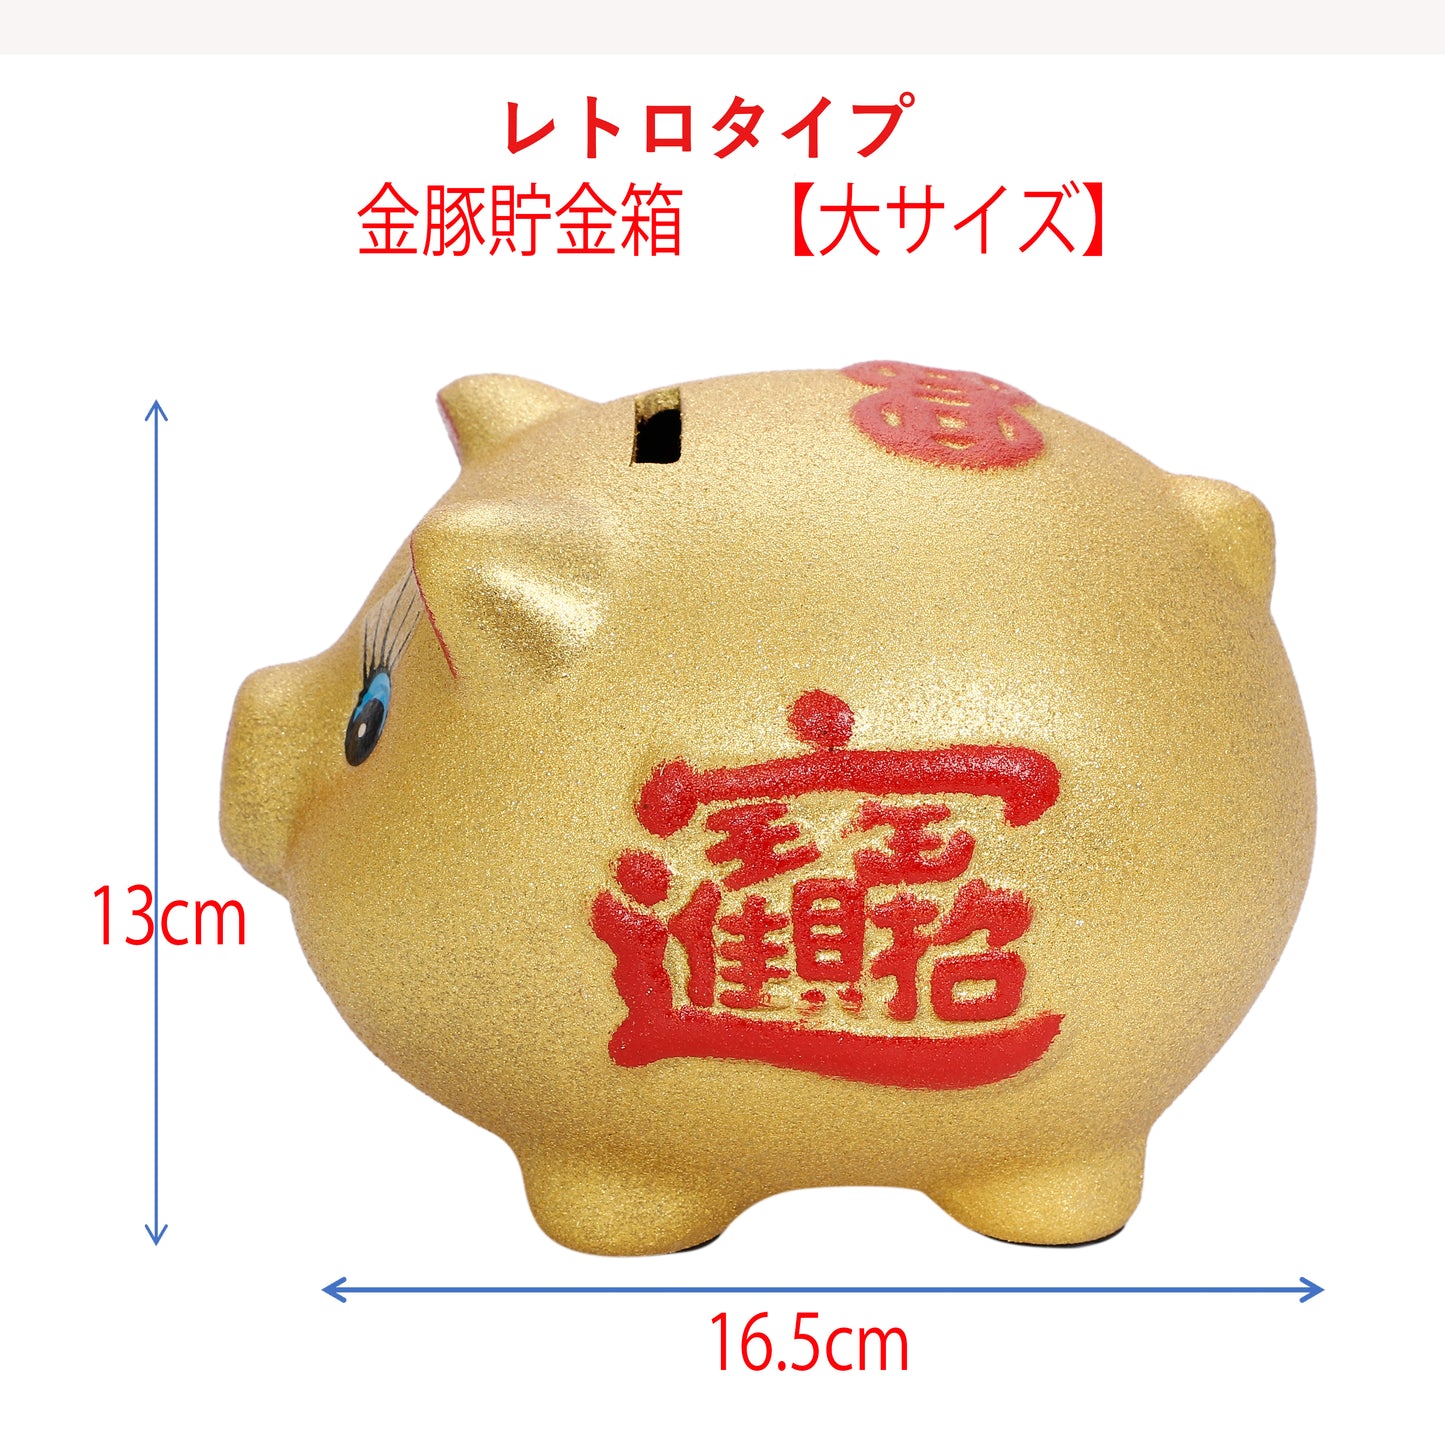 金豚貯金箱 レトロタイプ 大サイズ 16.5センチ